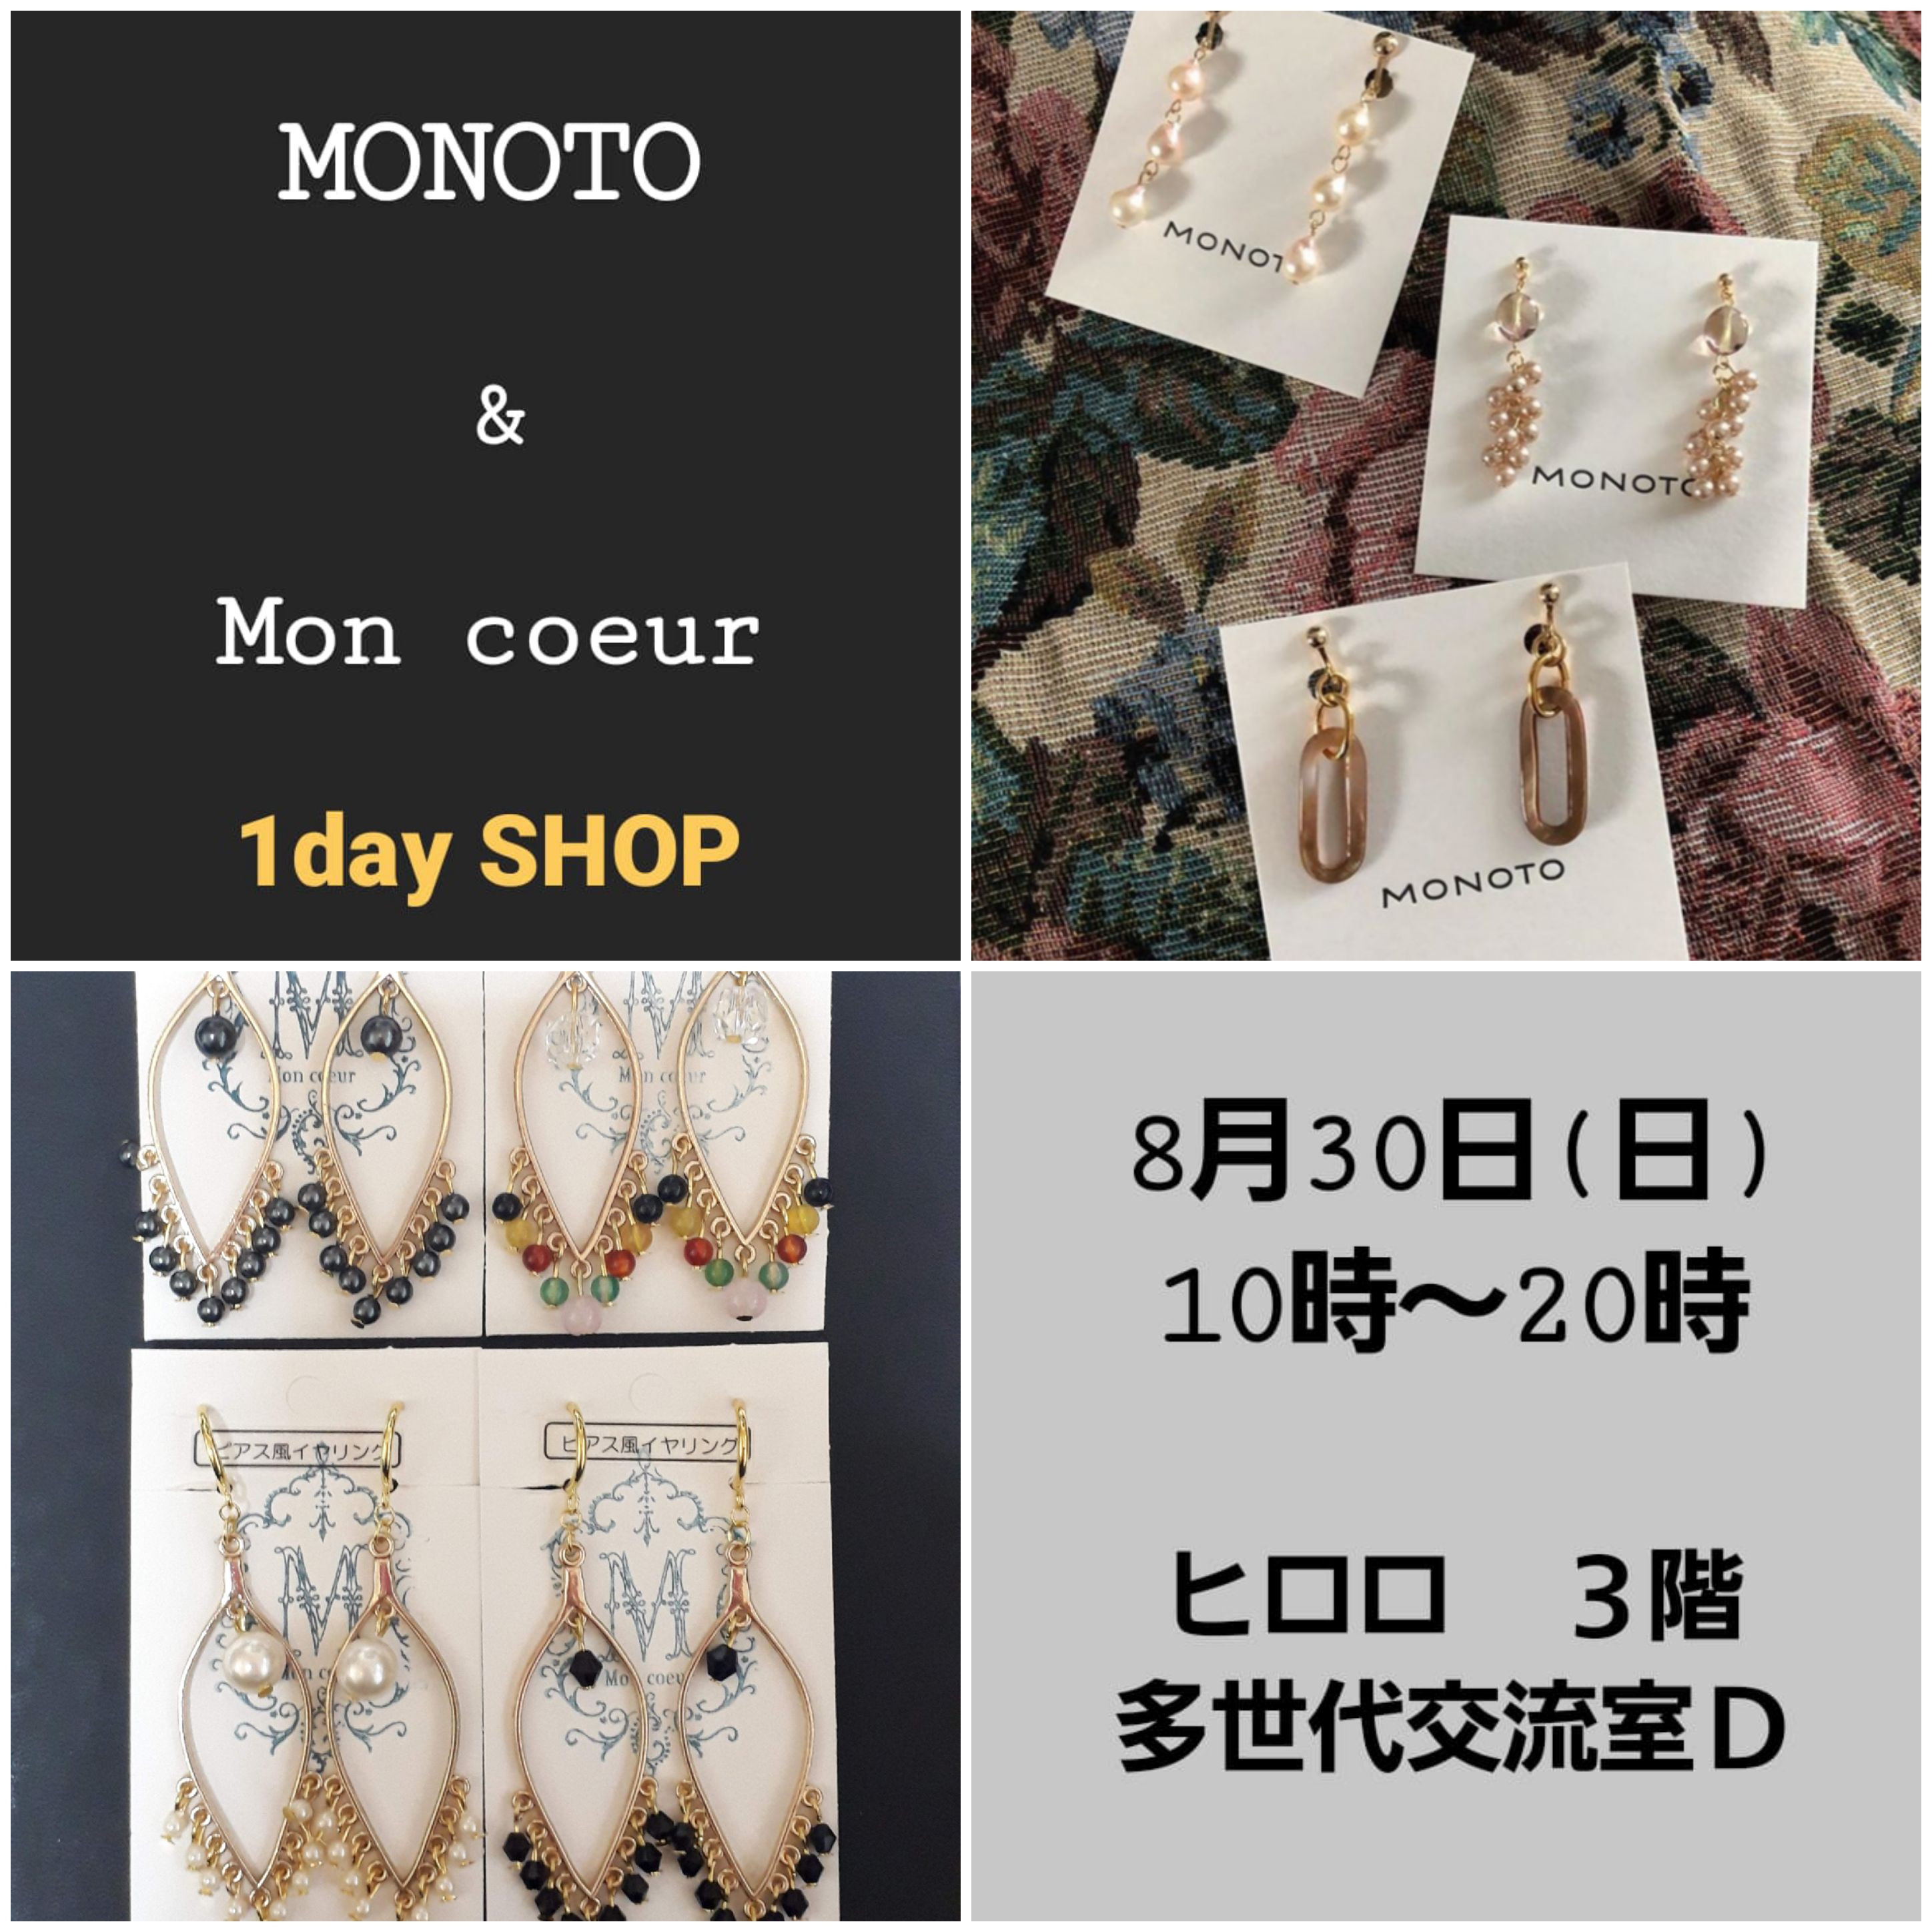 MONOTO&Mon coeur 1day SHOP.jpg